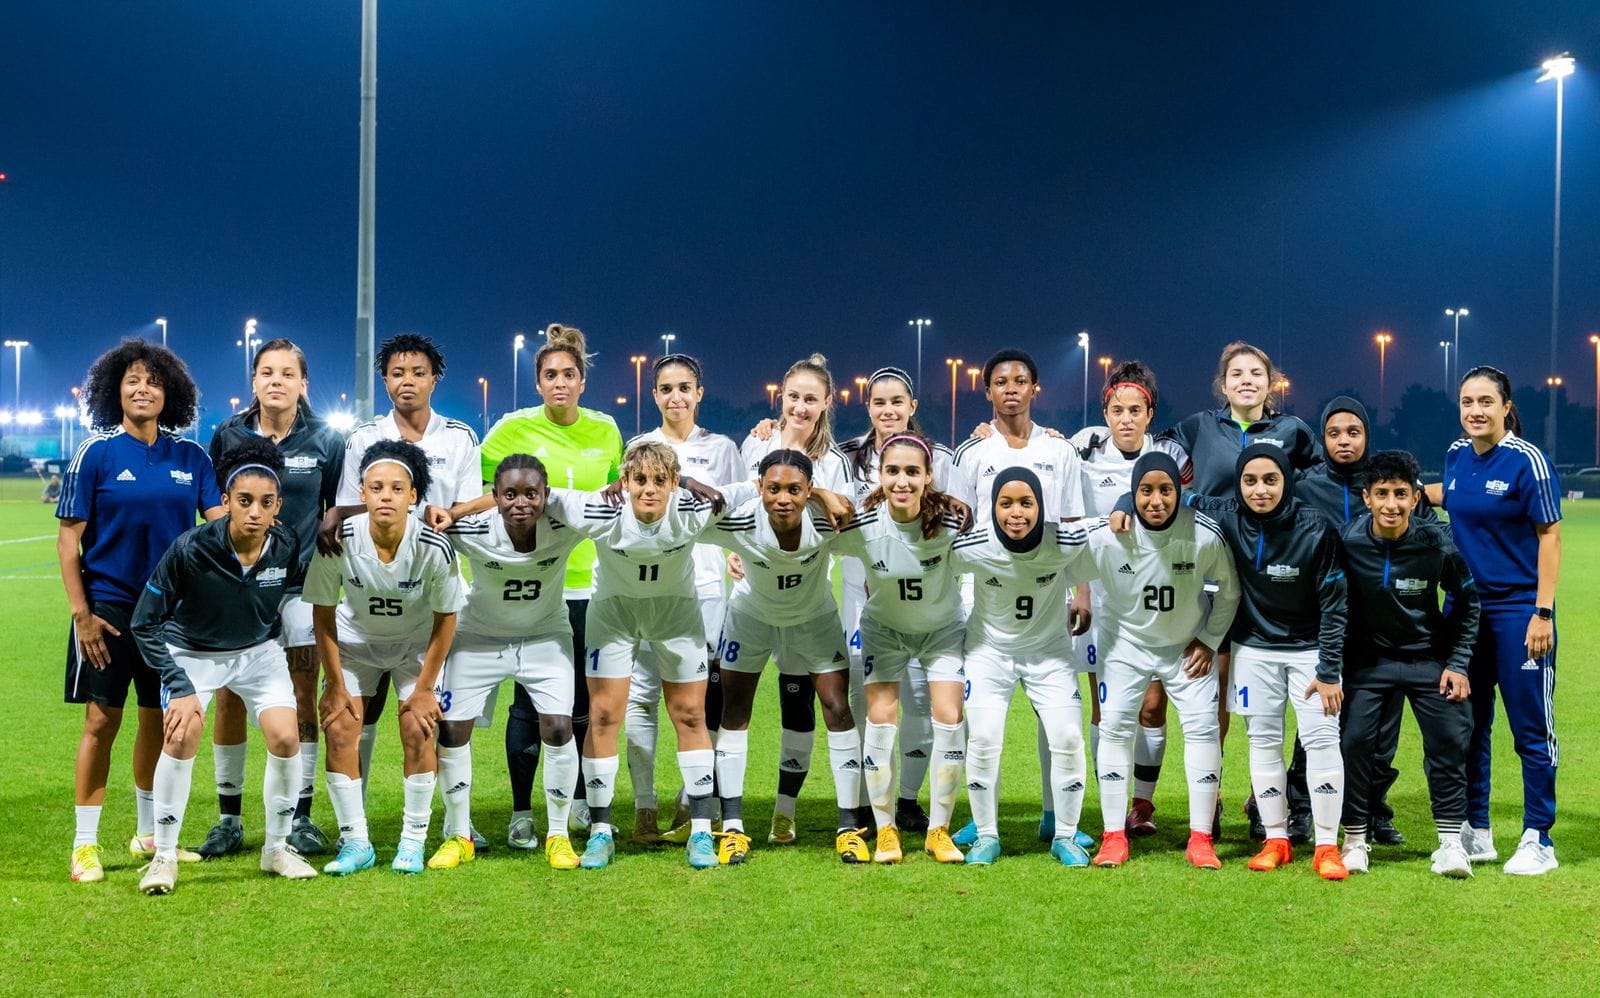 أبو ظبي، مهد صعود كرة القدم النسائية في الإمارات